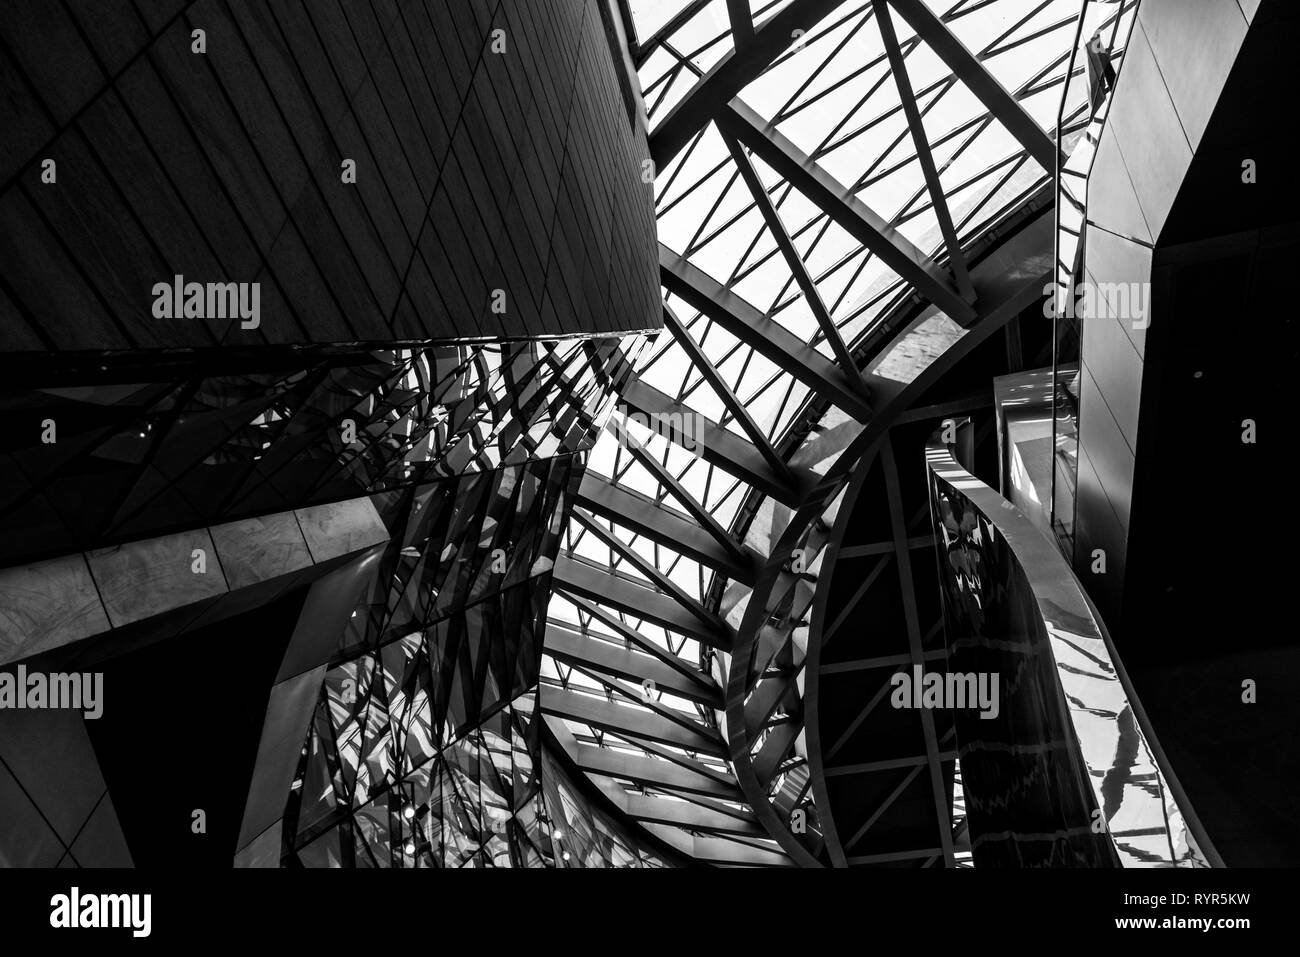 Architecture futuriste intérieur avec des courbes gracieuses au musée MOCAPE monochrome à Shenzhen, Chine Banque D'Images